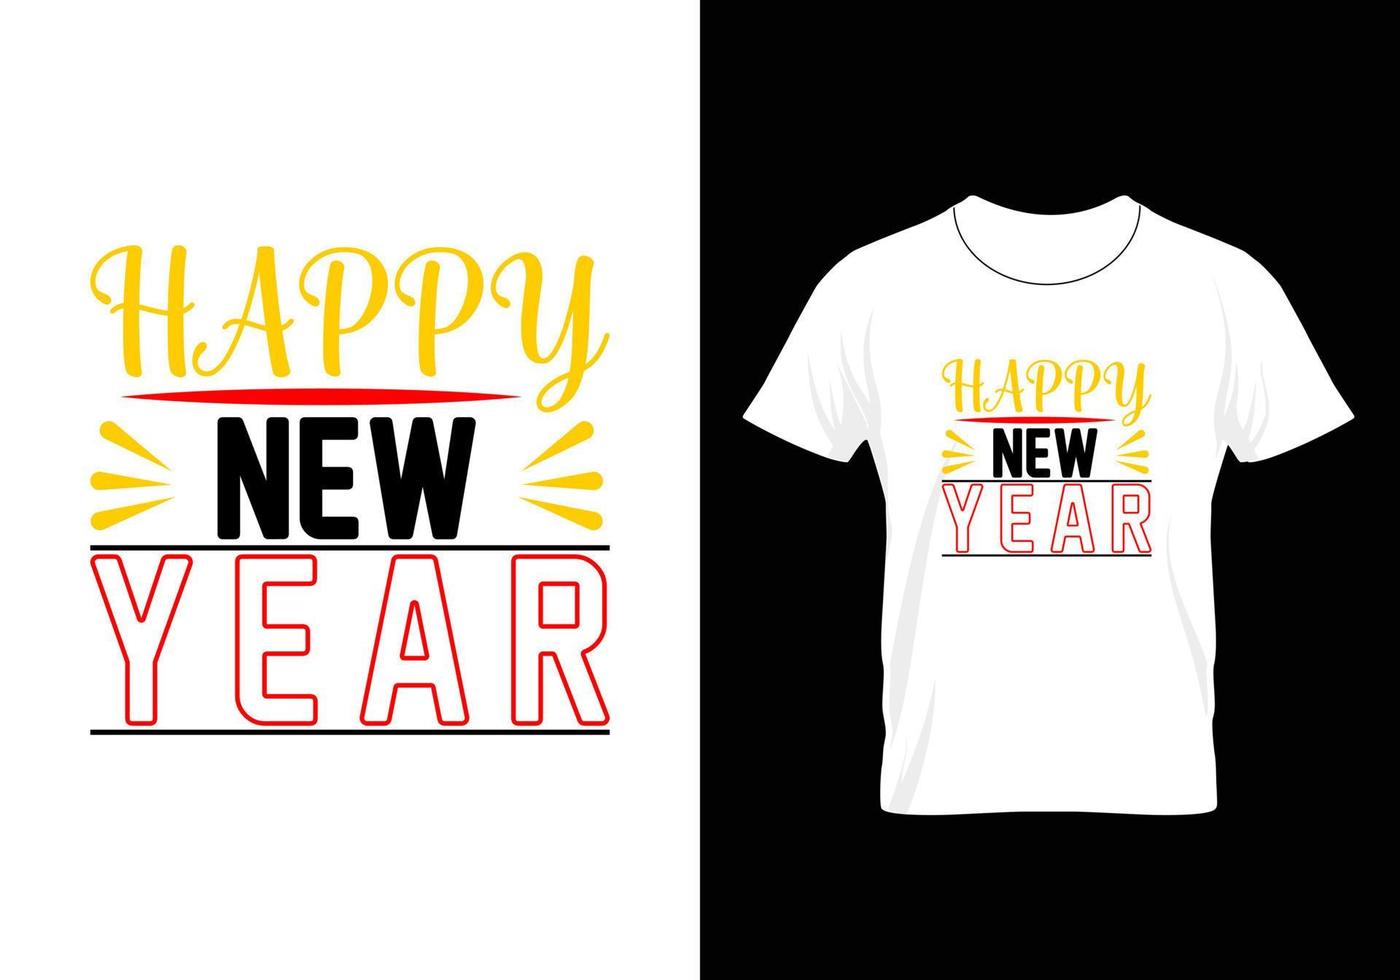 mejor tipografía navidad y feliz año nuevo diseño de camiseta vector